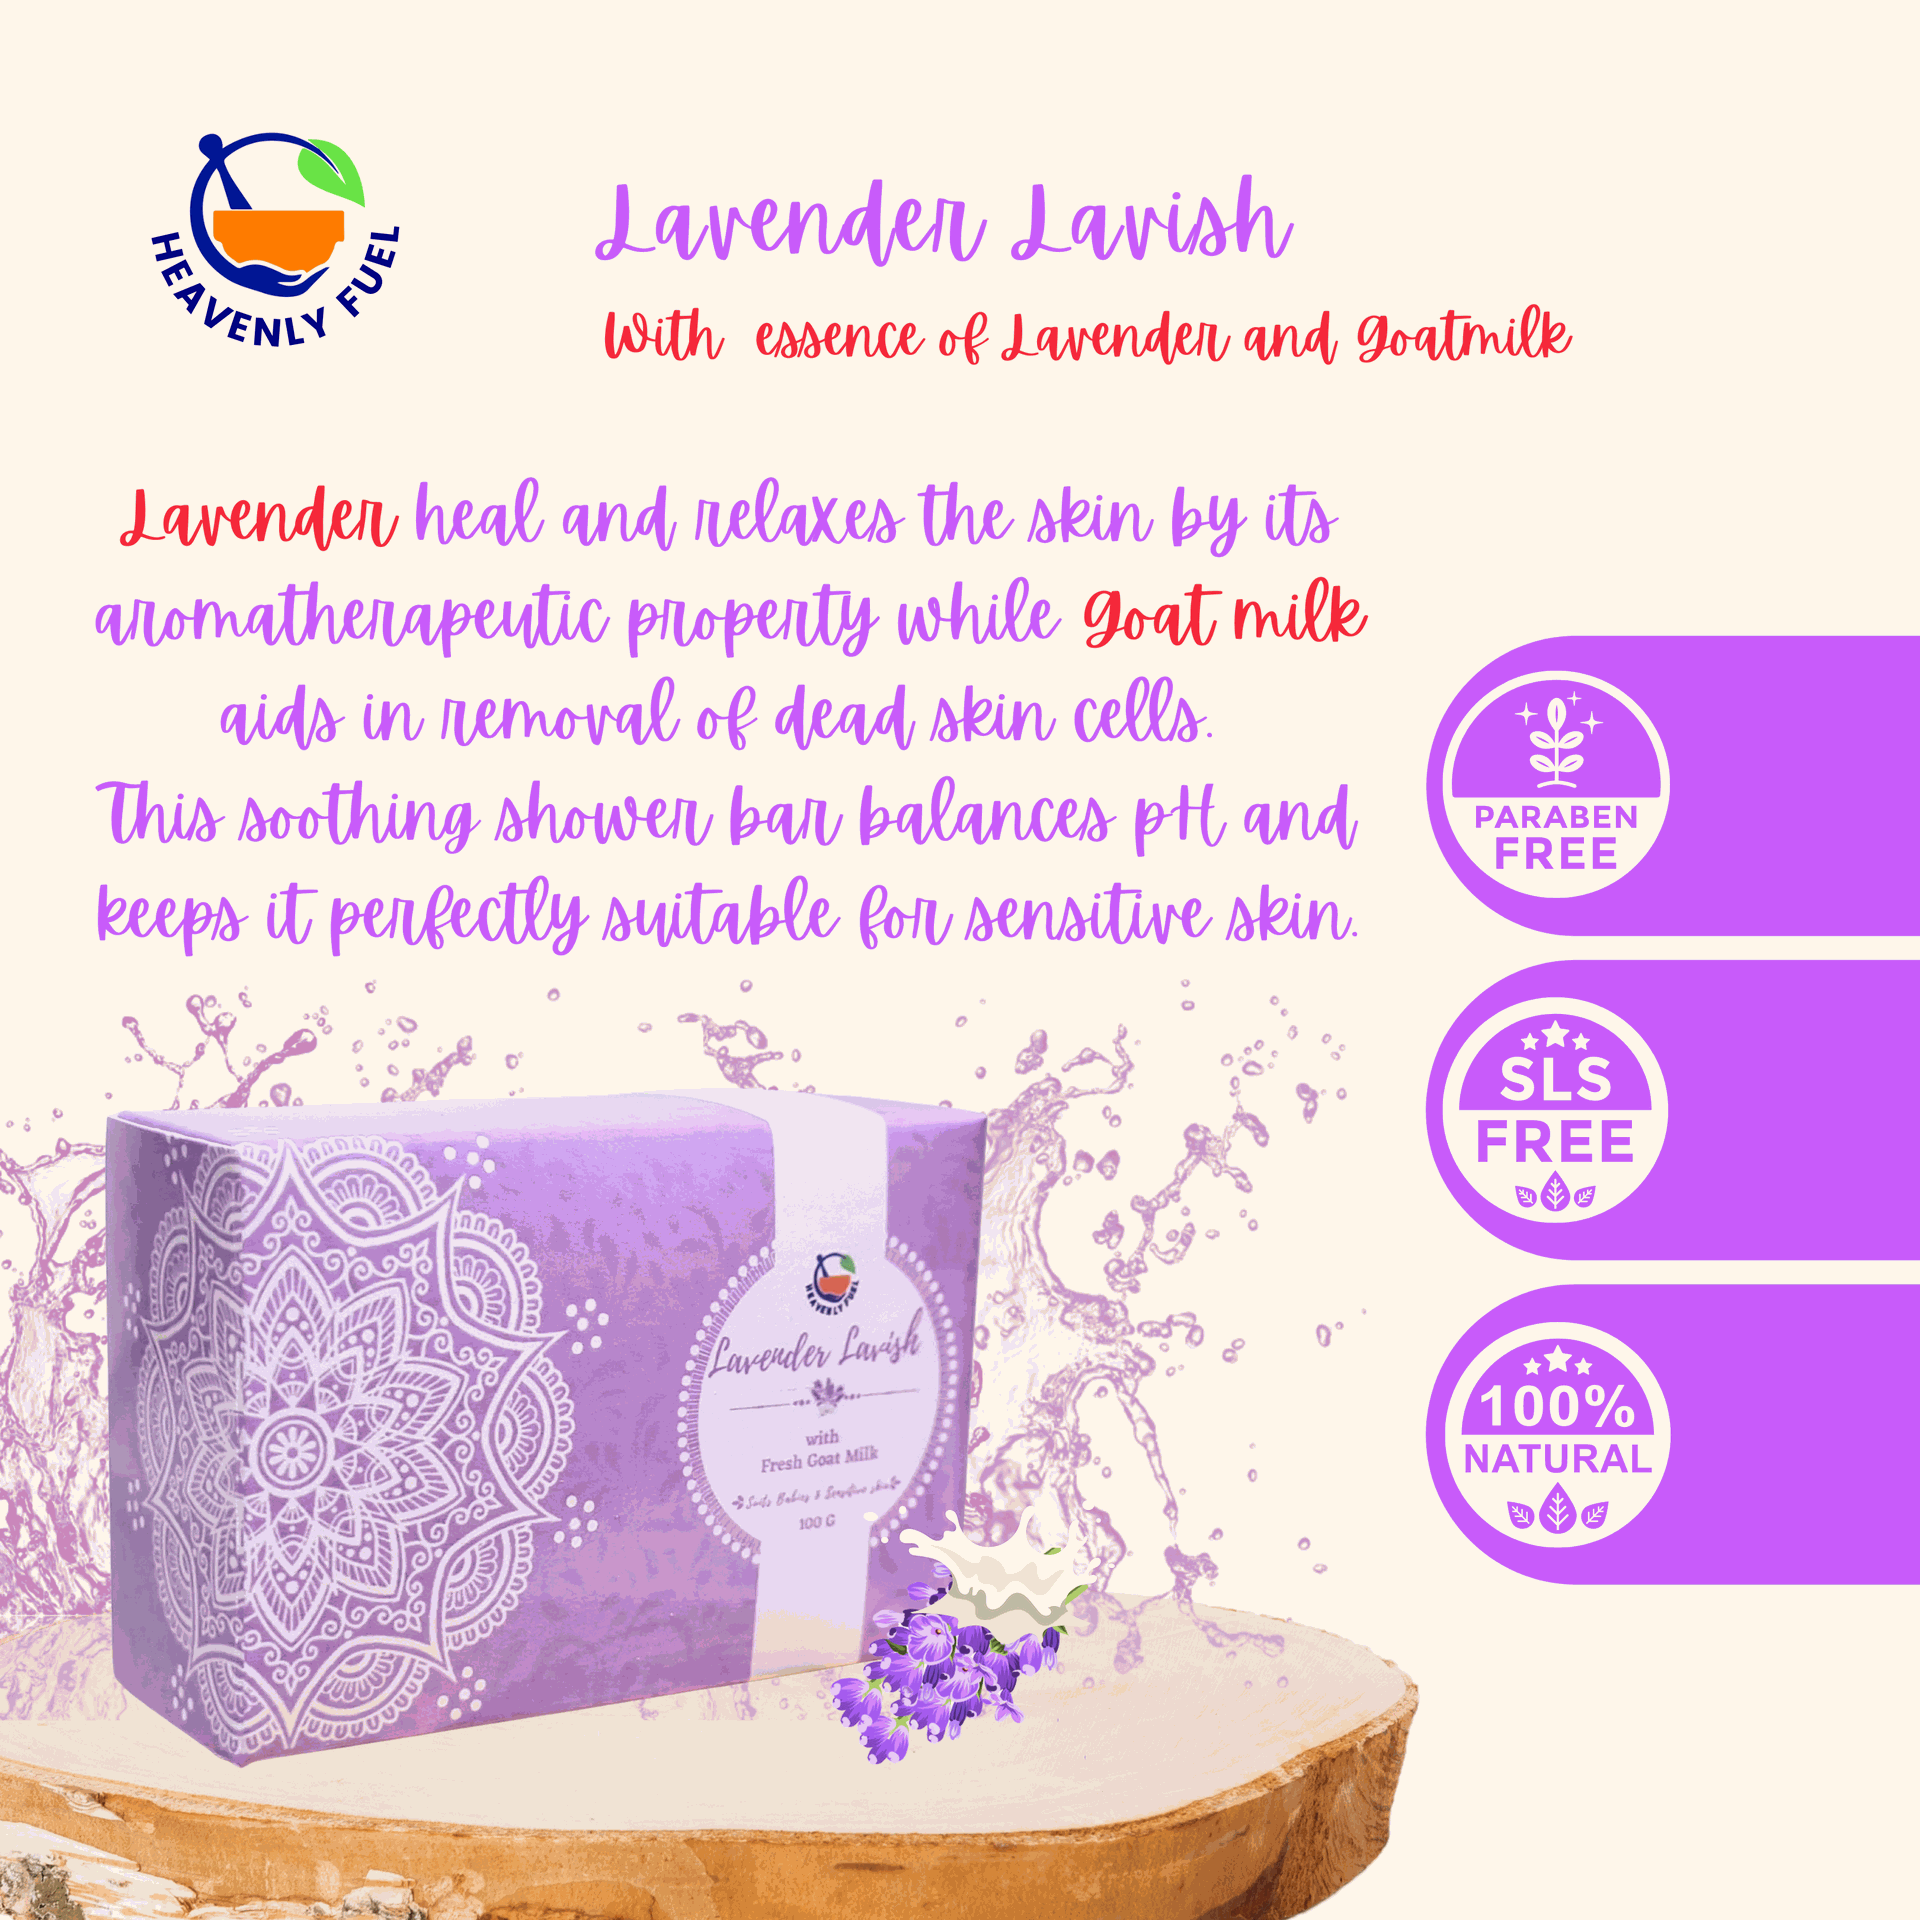 Lavender Lavish |Handmade Butter Soap|100g - hfnl!fe